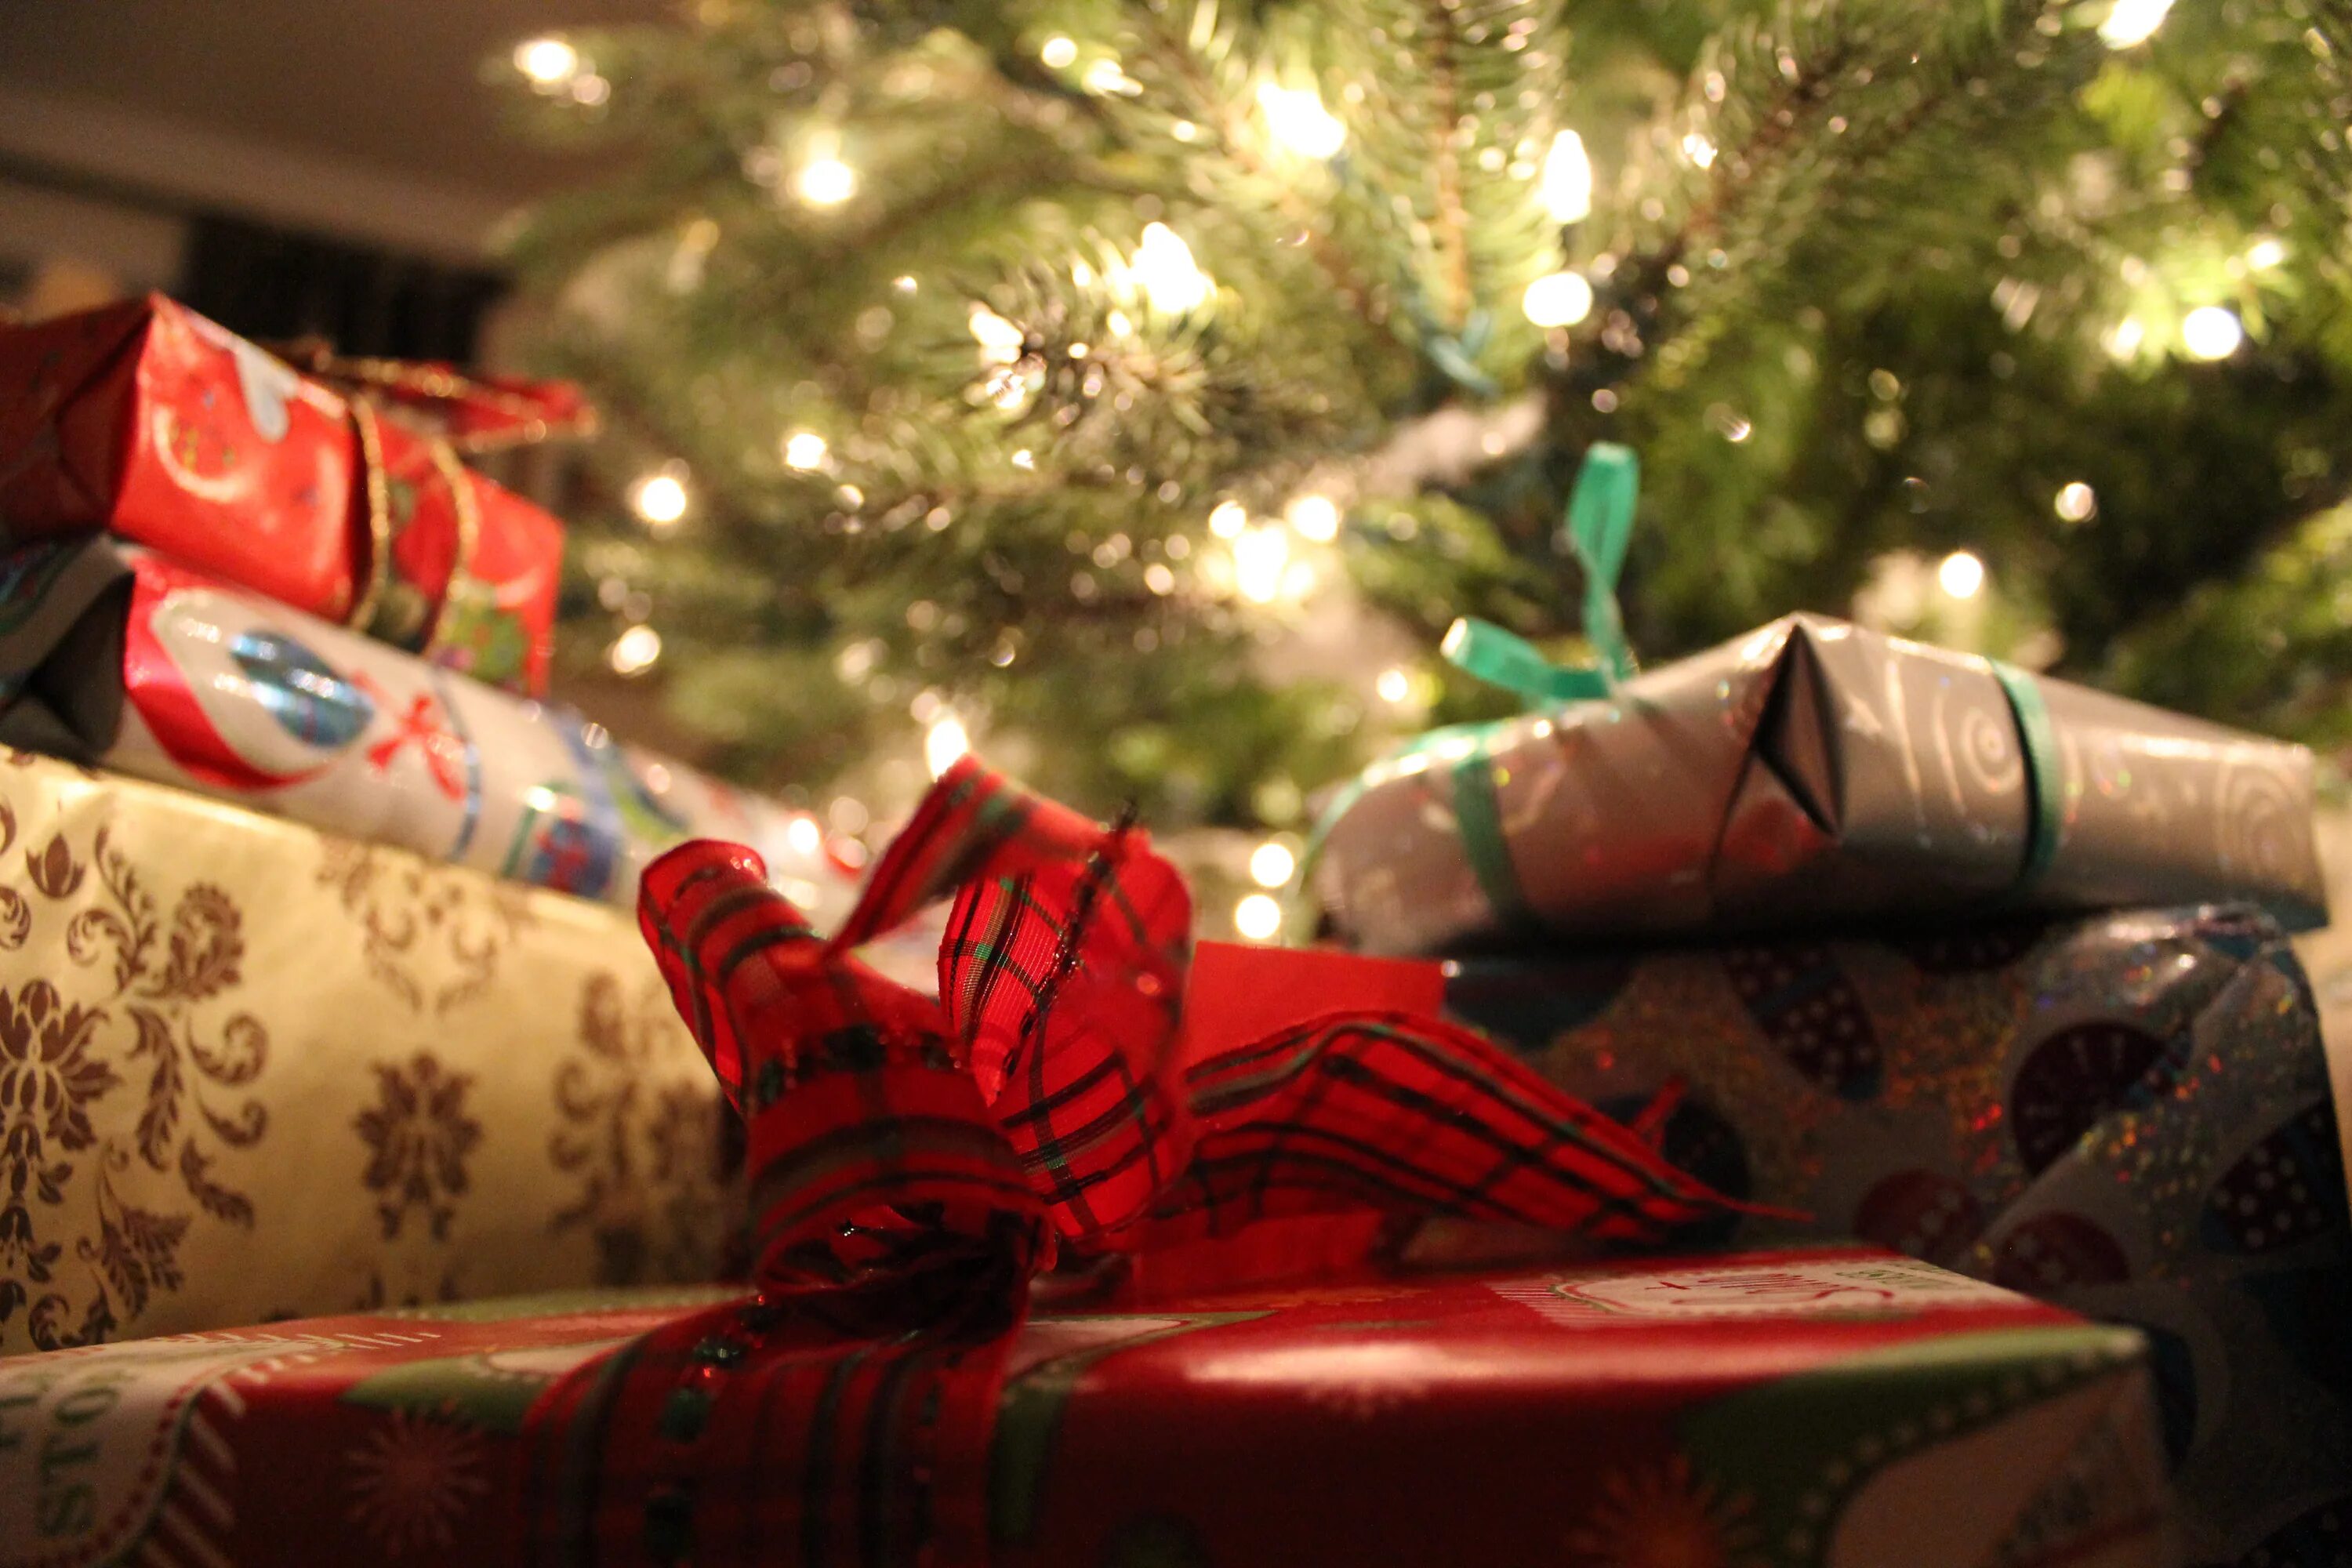 Подарки под ёлкой. Мешок под елкой. Мешок новогодний под елкой. Подарки под елкой США. Работает ли в новый год